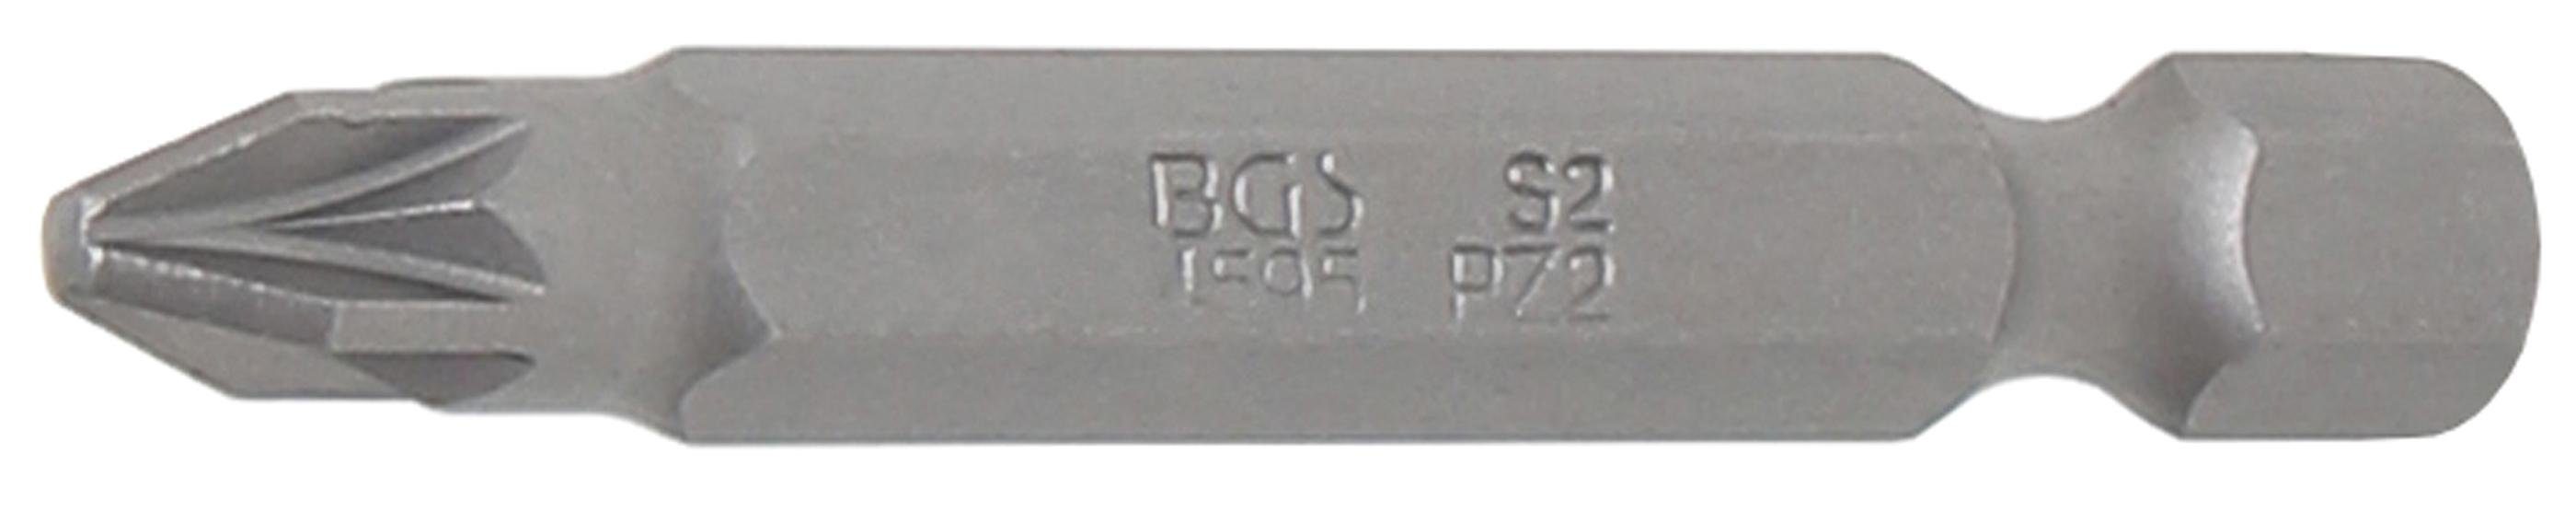 BGS technic Bit-Schraubendreher Bit, Länge 50 mm, Antrieb Außensechskant 6,3 mm (1/4), Kreuzschlitz PZ2